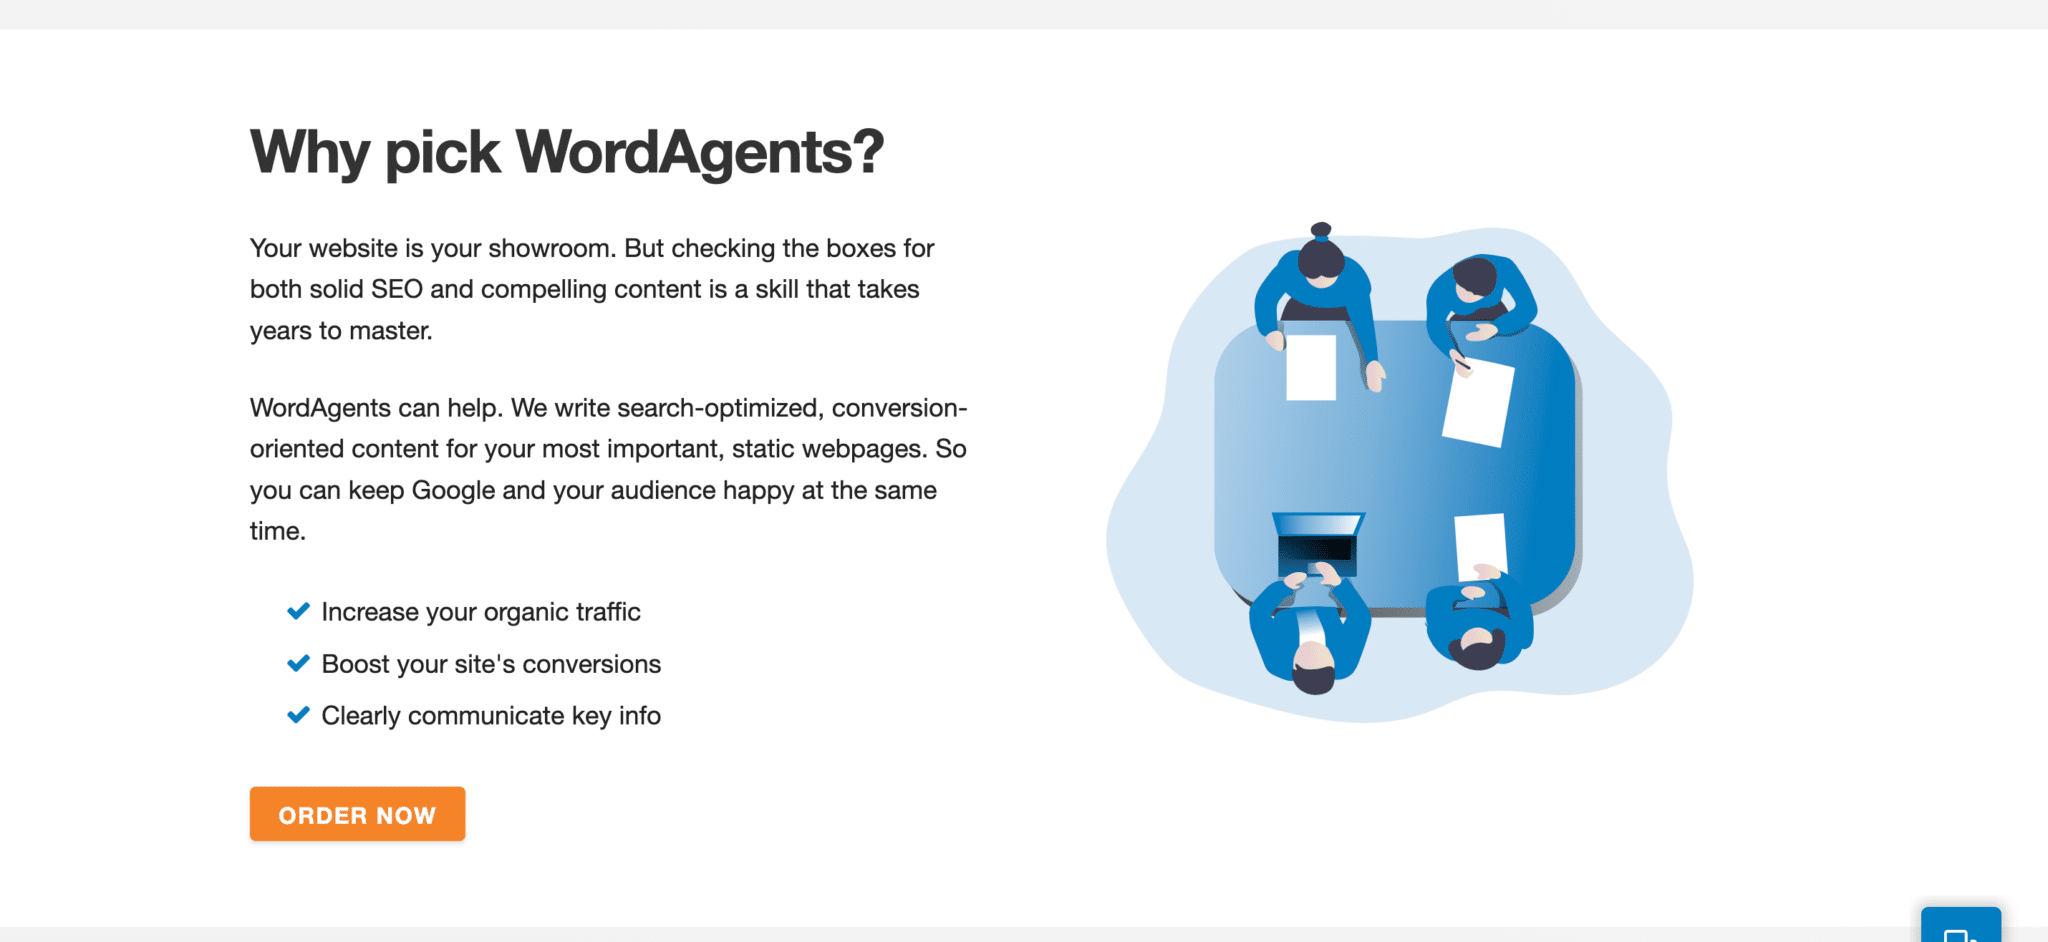 WordAgents review website content